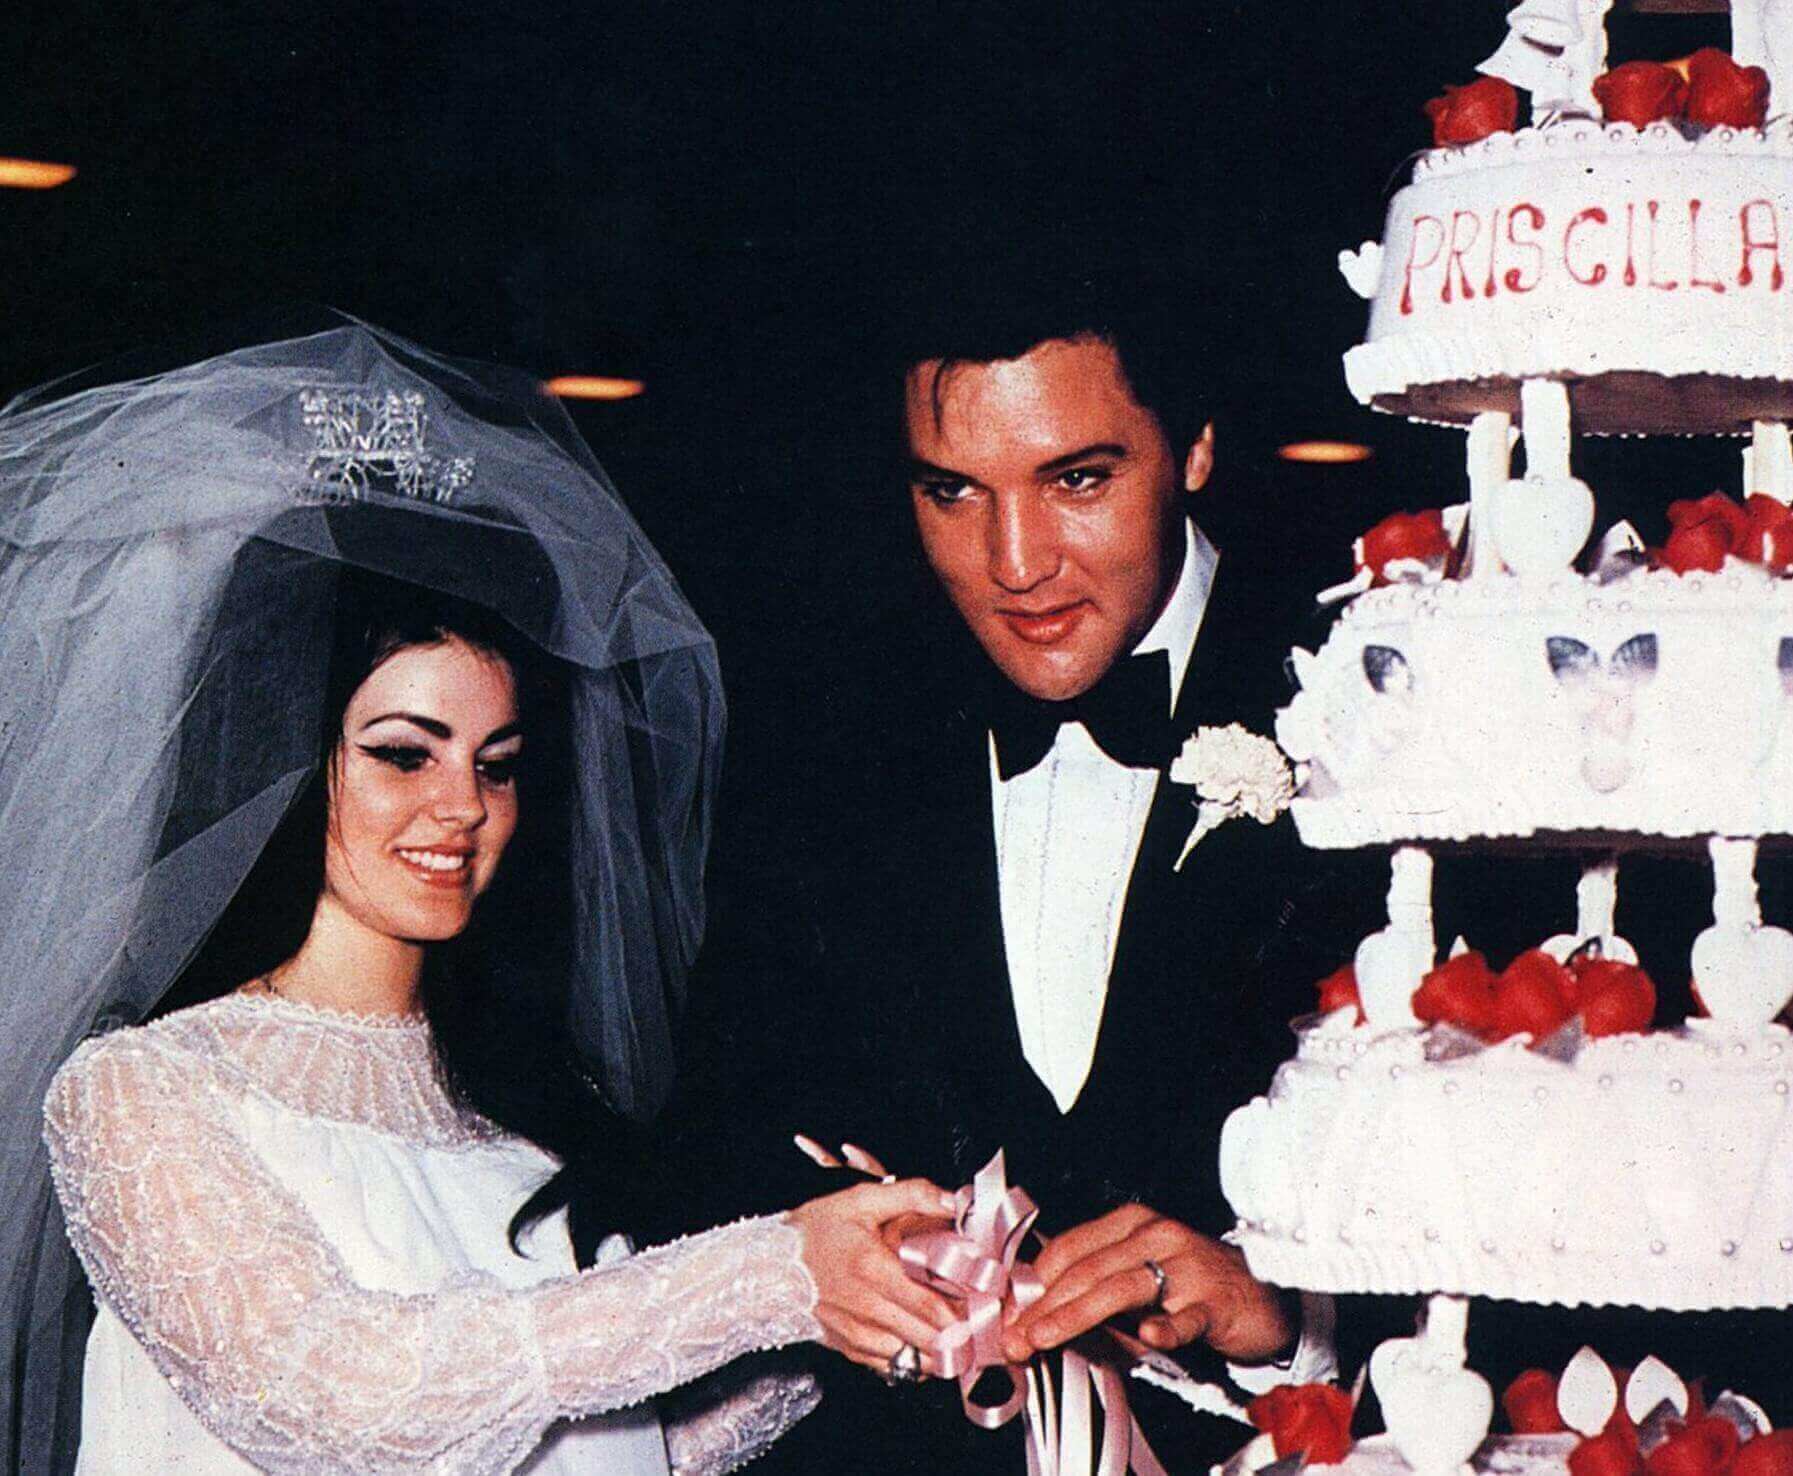 Priscilla Presley and Elvis Presley with a cake